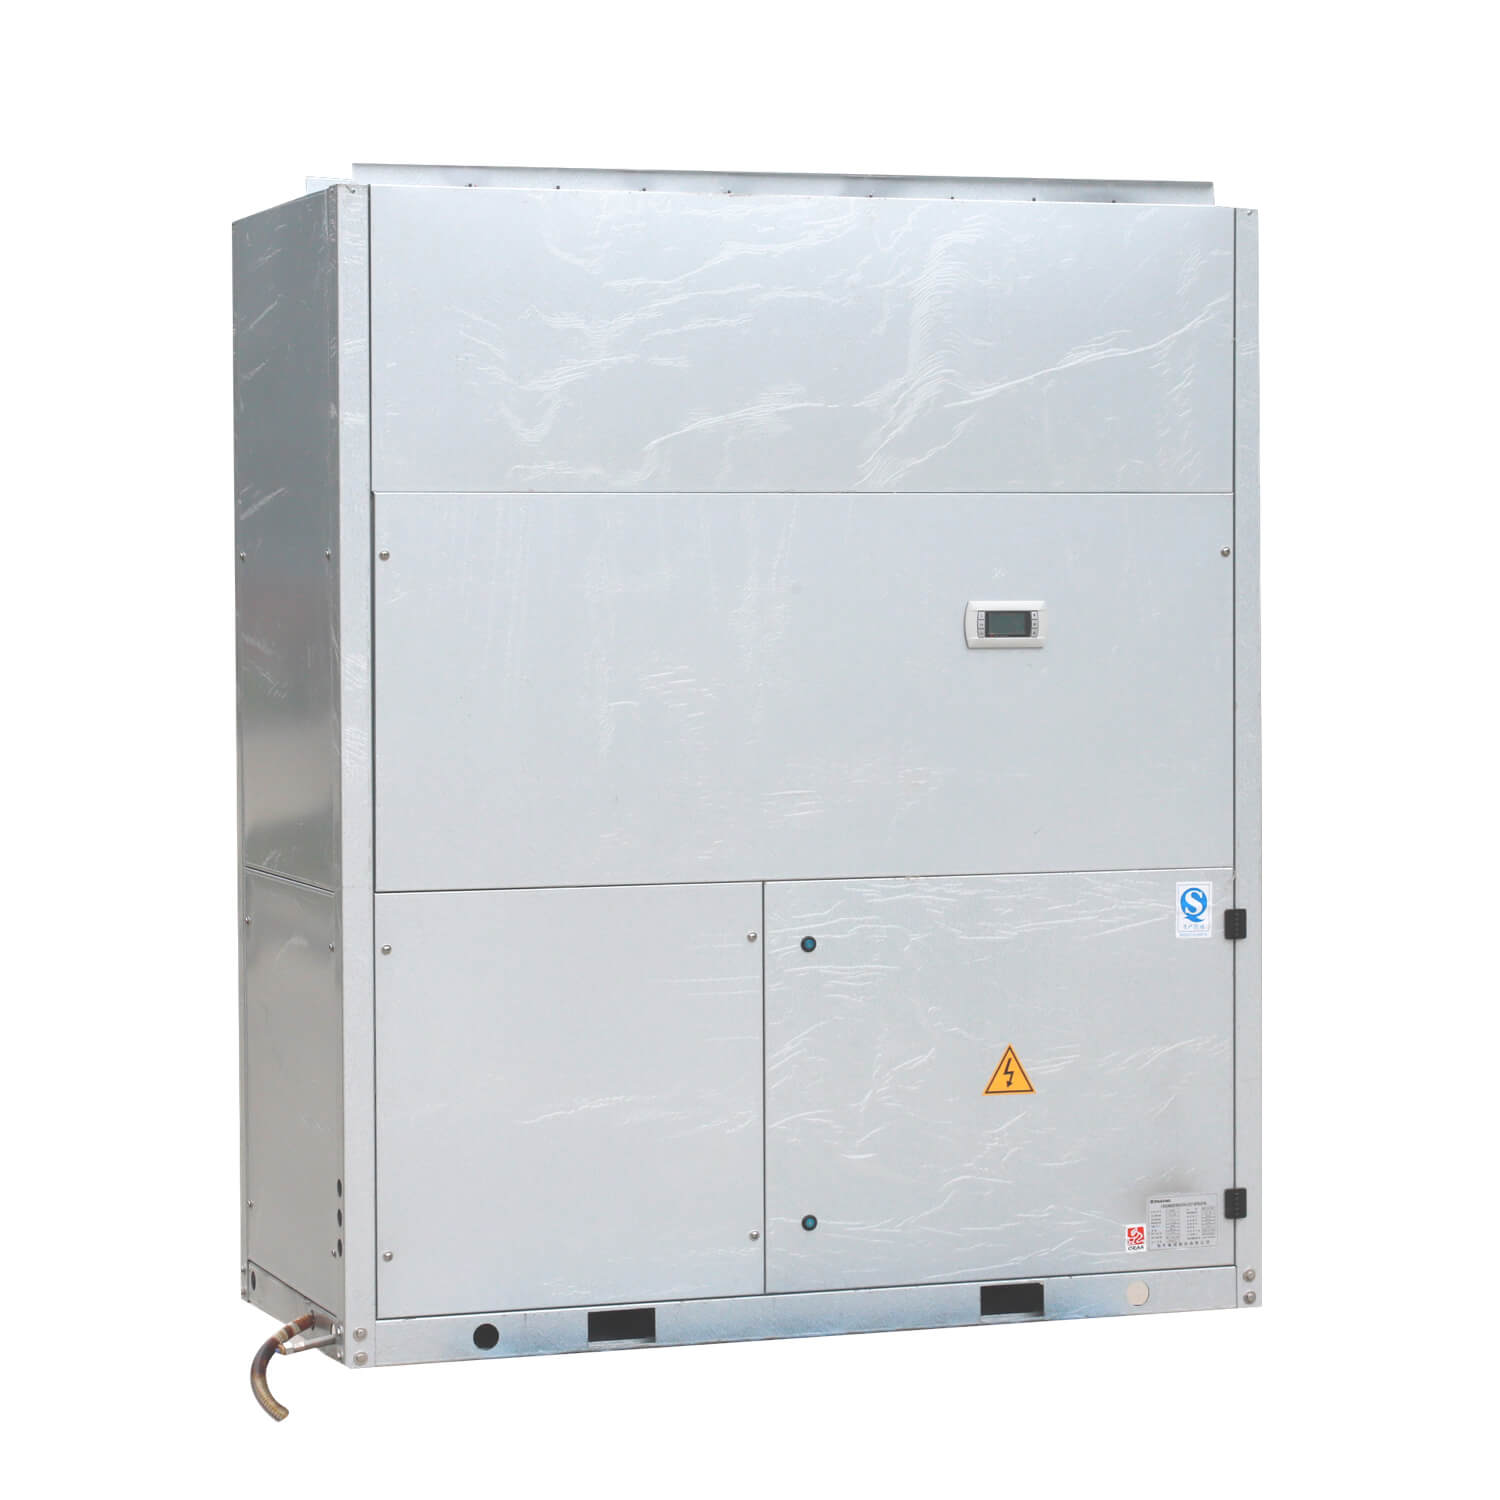 Wasserkühlgerät für gewerbliche Klimaanlagen